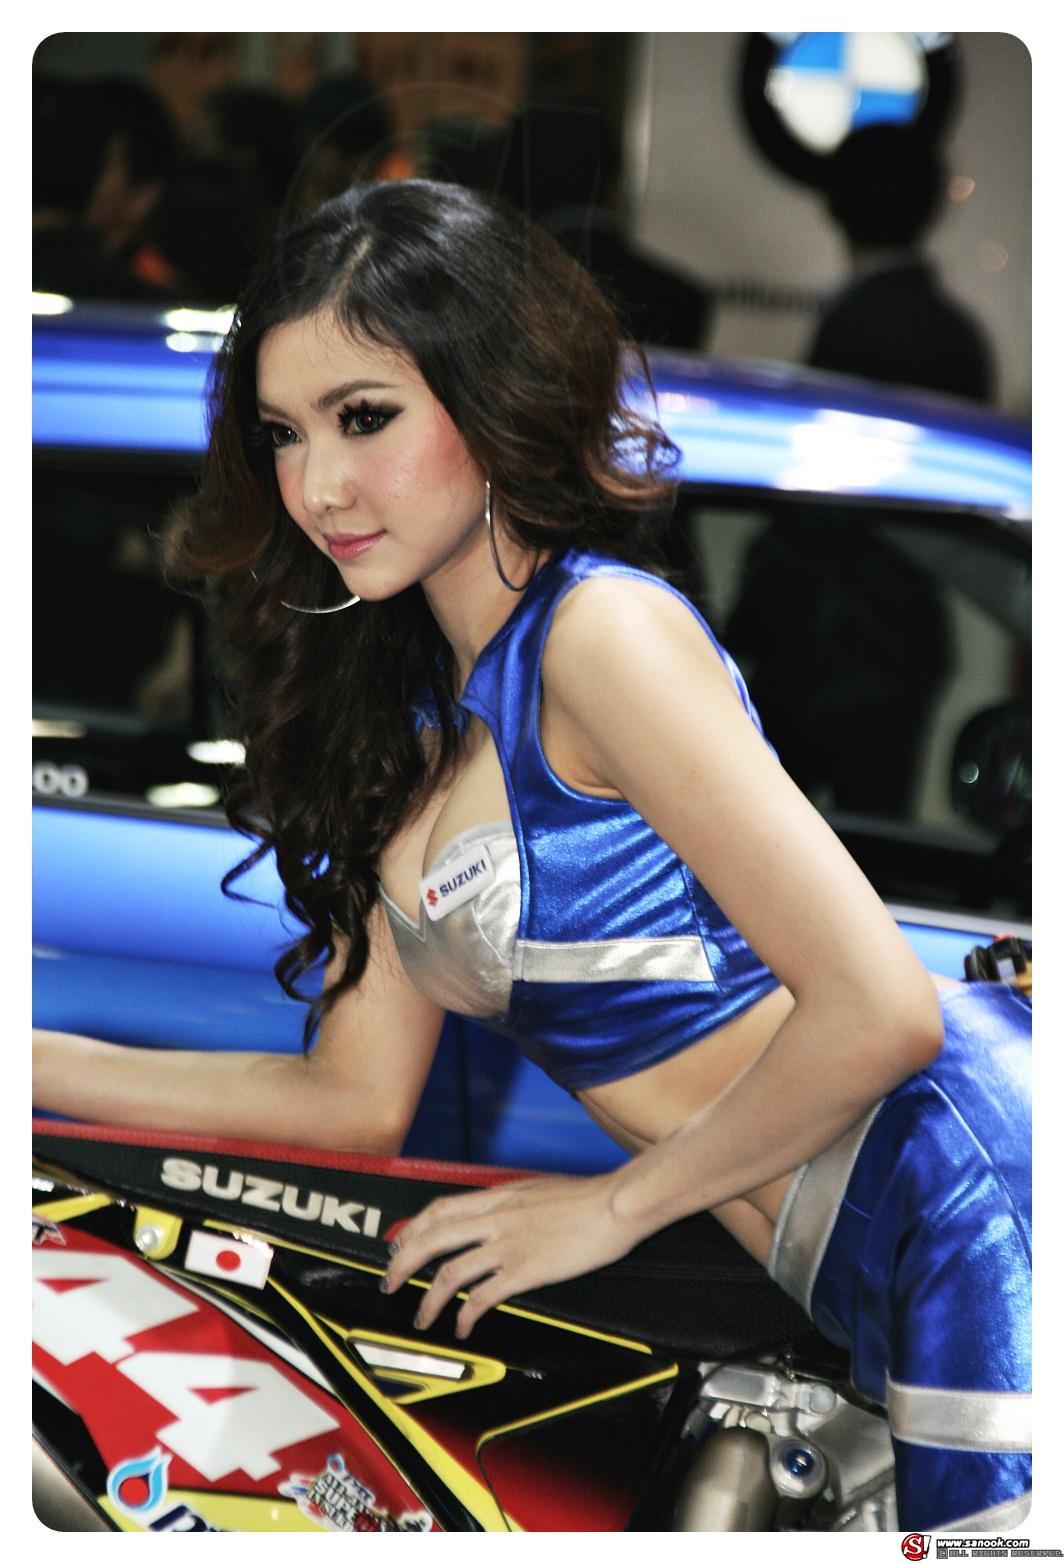  Bangkok Auto Salon 2012